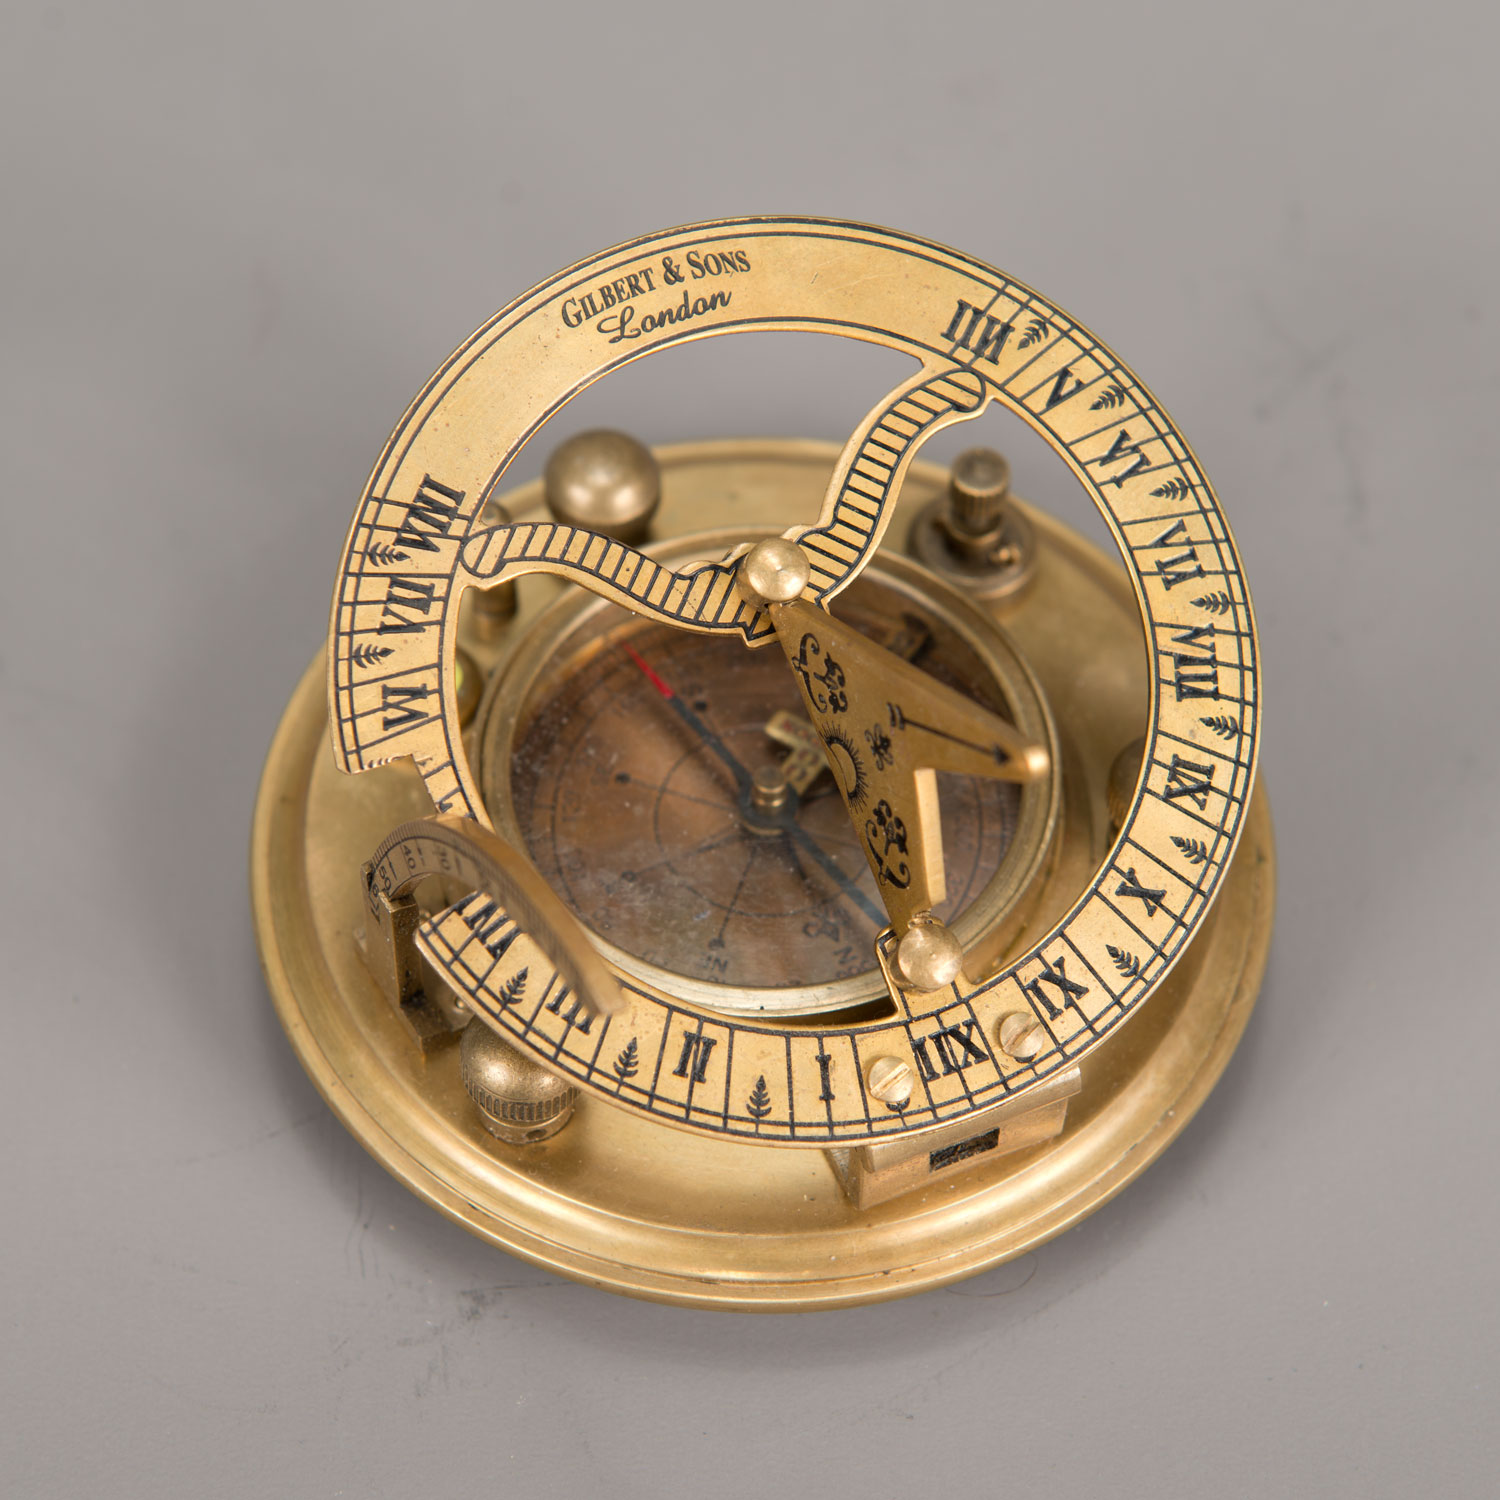 Gilbert & Sons London compass